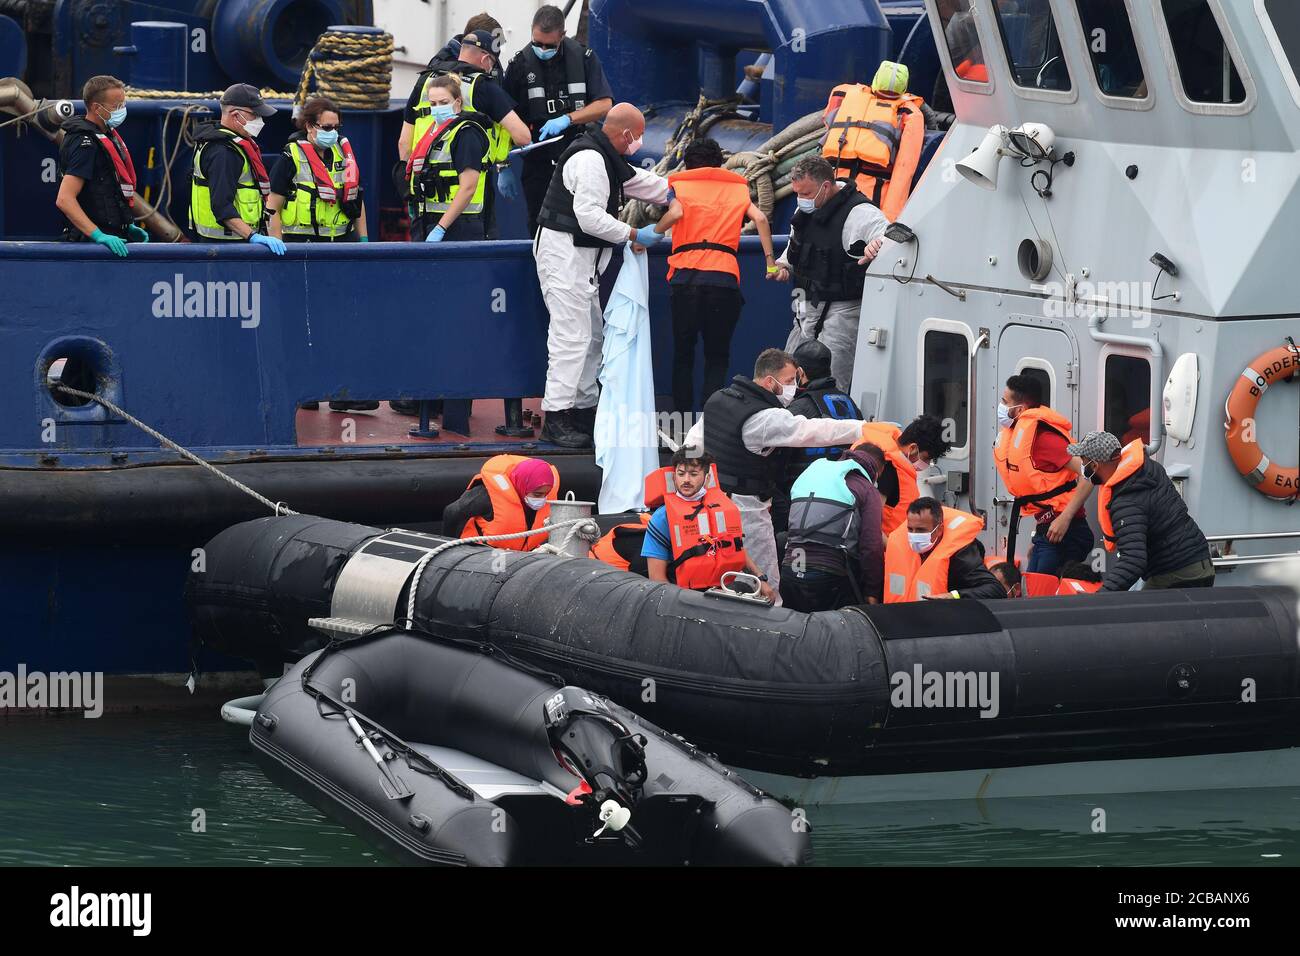 Eine Gruppe von Menschen, die als Migranten gedacht werden, steigen aus, als sie von Grenzbeamten nach Dover, Kent, gebracht werden, nachdem sie heute im Kanal eine Reihe von kleinen Bootsvorfällen hatten. Stockfoto